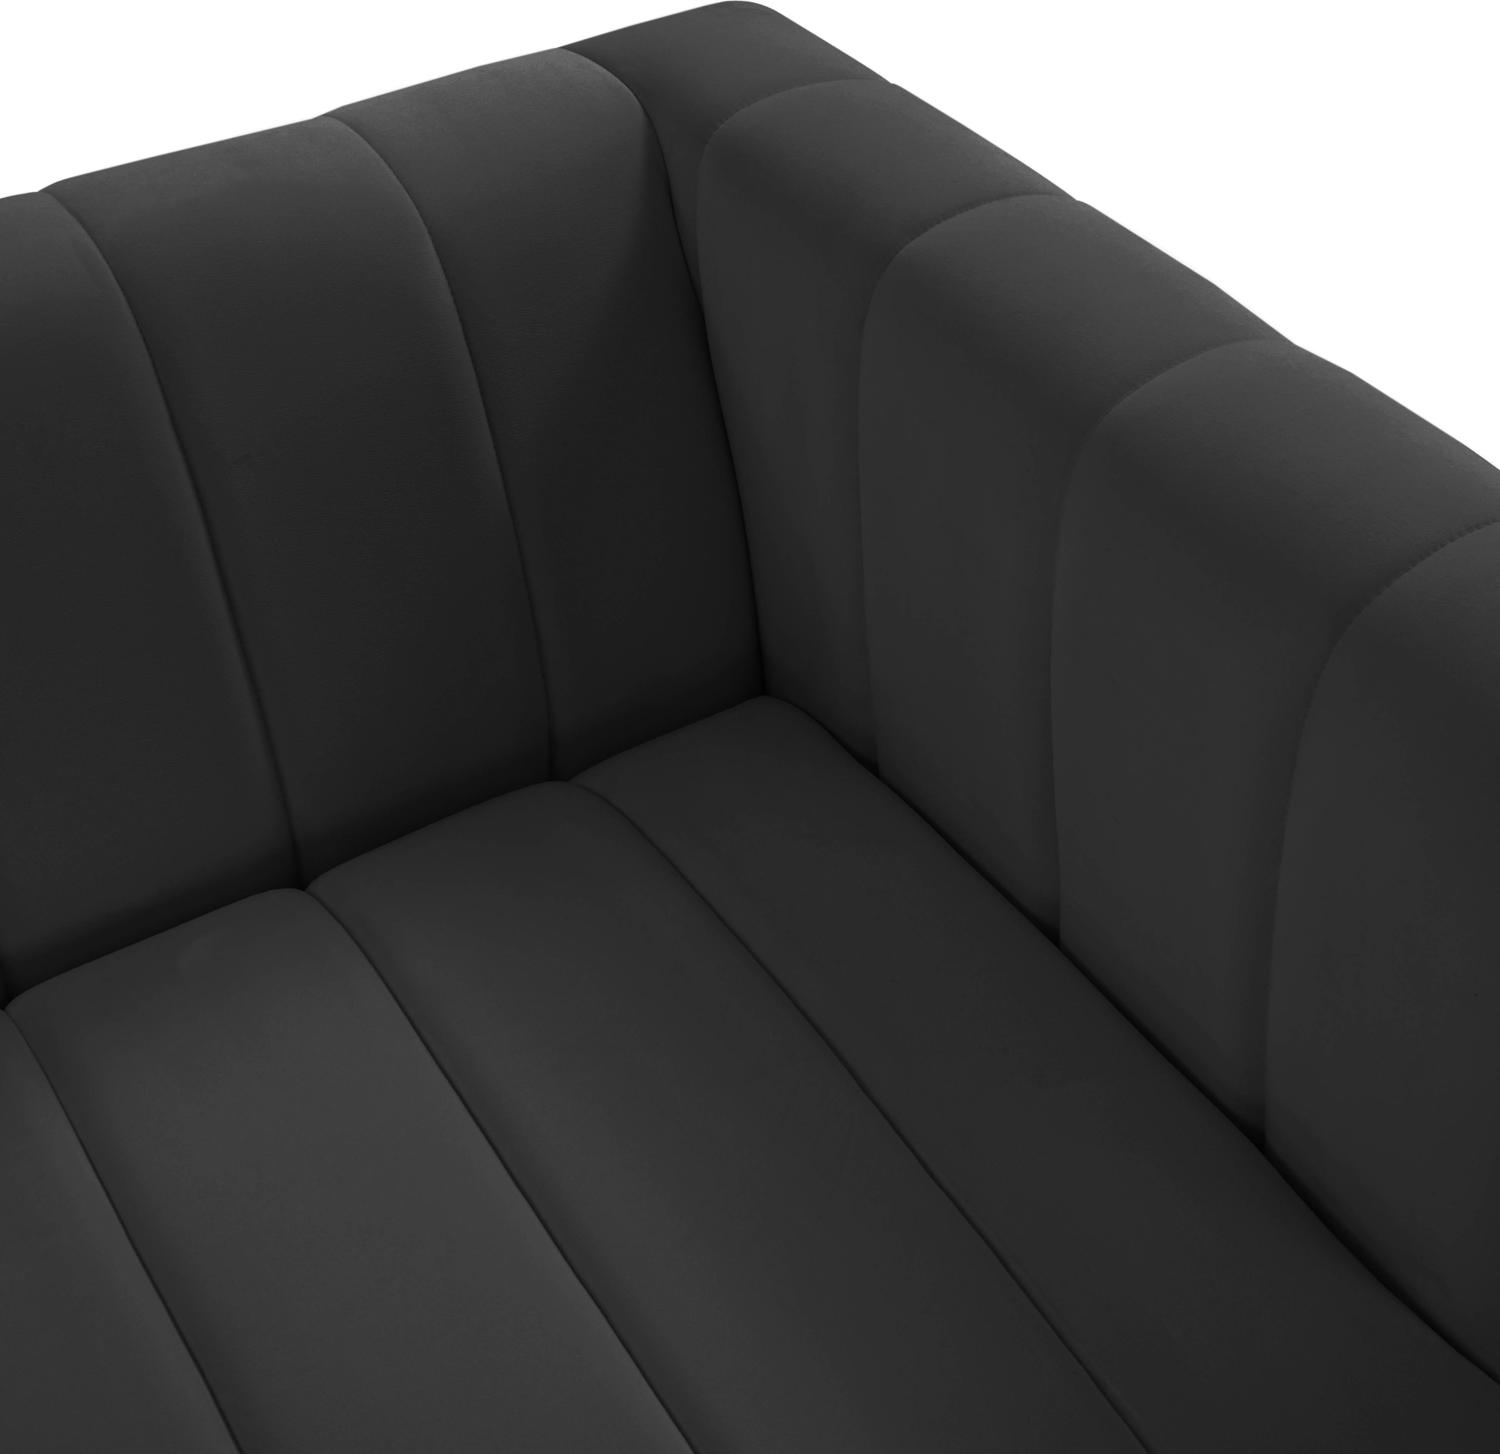 blue velvet sectional sleeper Tov Furniture Sofas Black